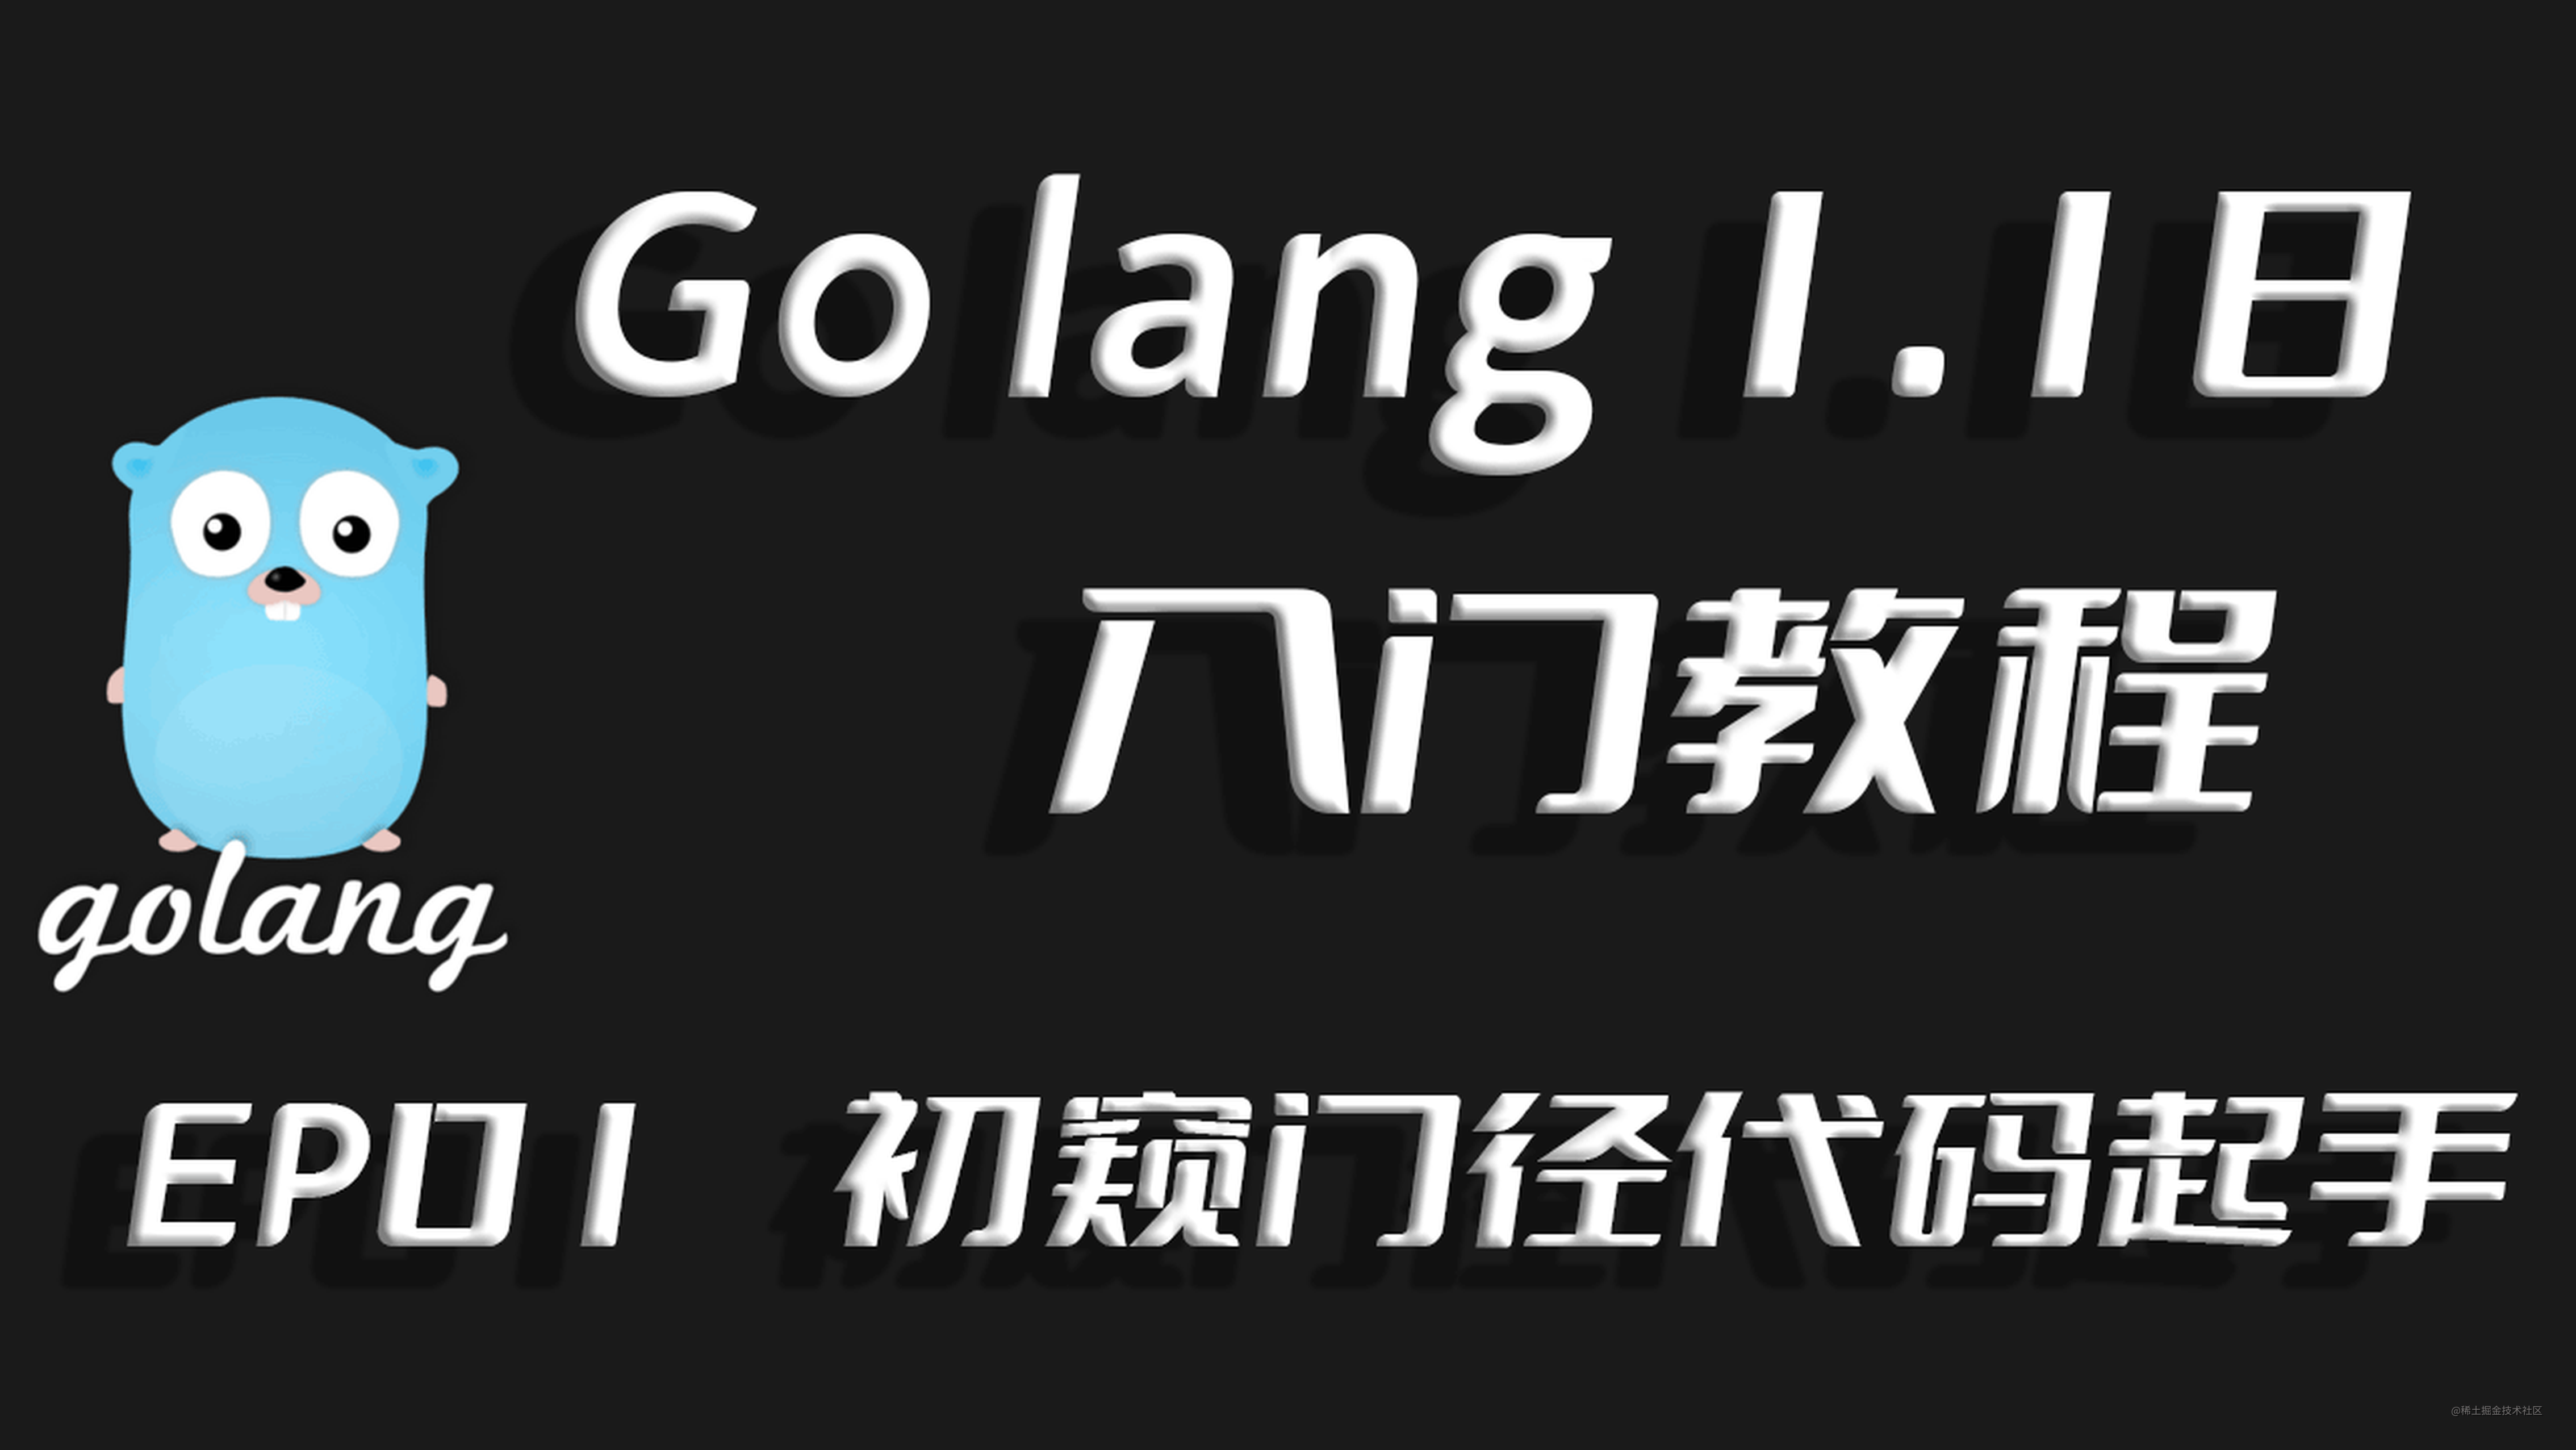 初窥门径代码起手,Go lang1.18入门精炼教程，由白丁入鸿儒，首次运行golang程序EP01